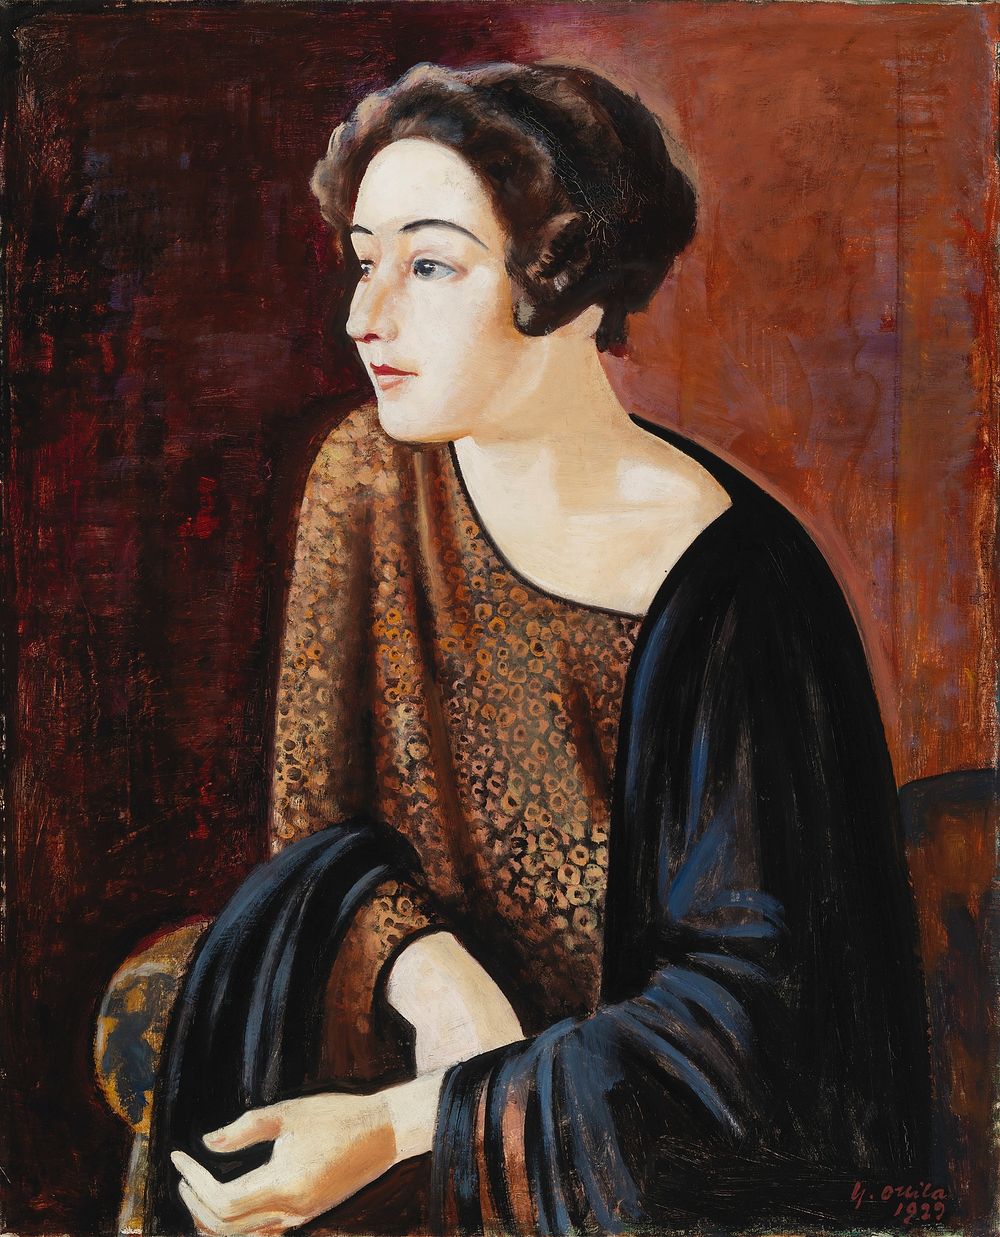 Portrait of the poet elina vaara, 1929, Yrjö Ollila